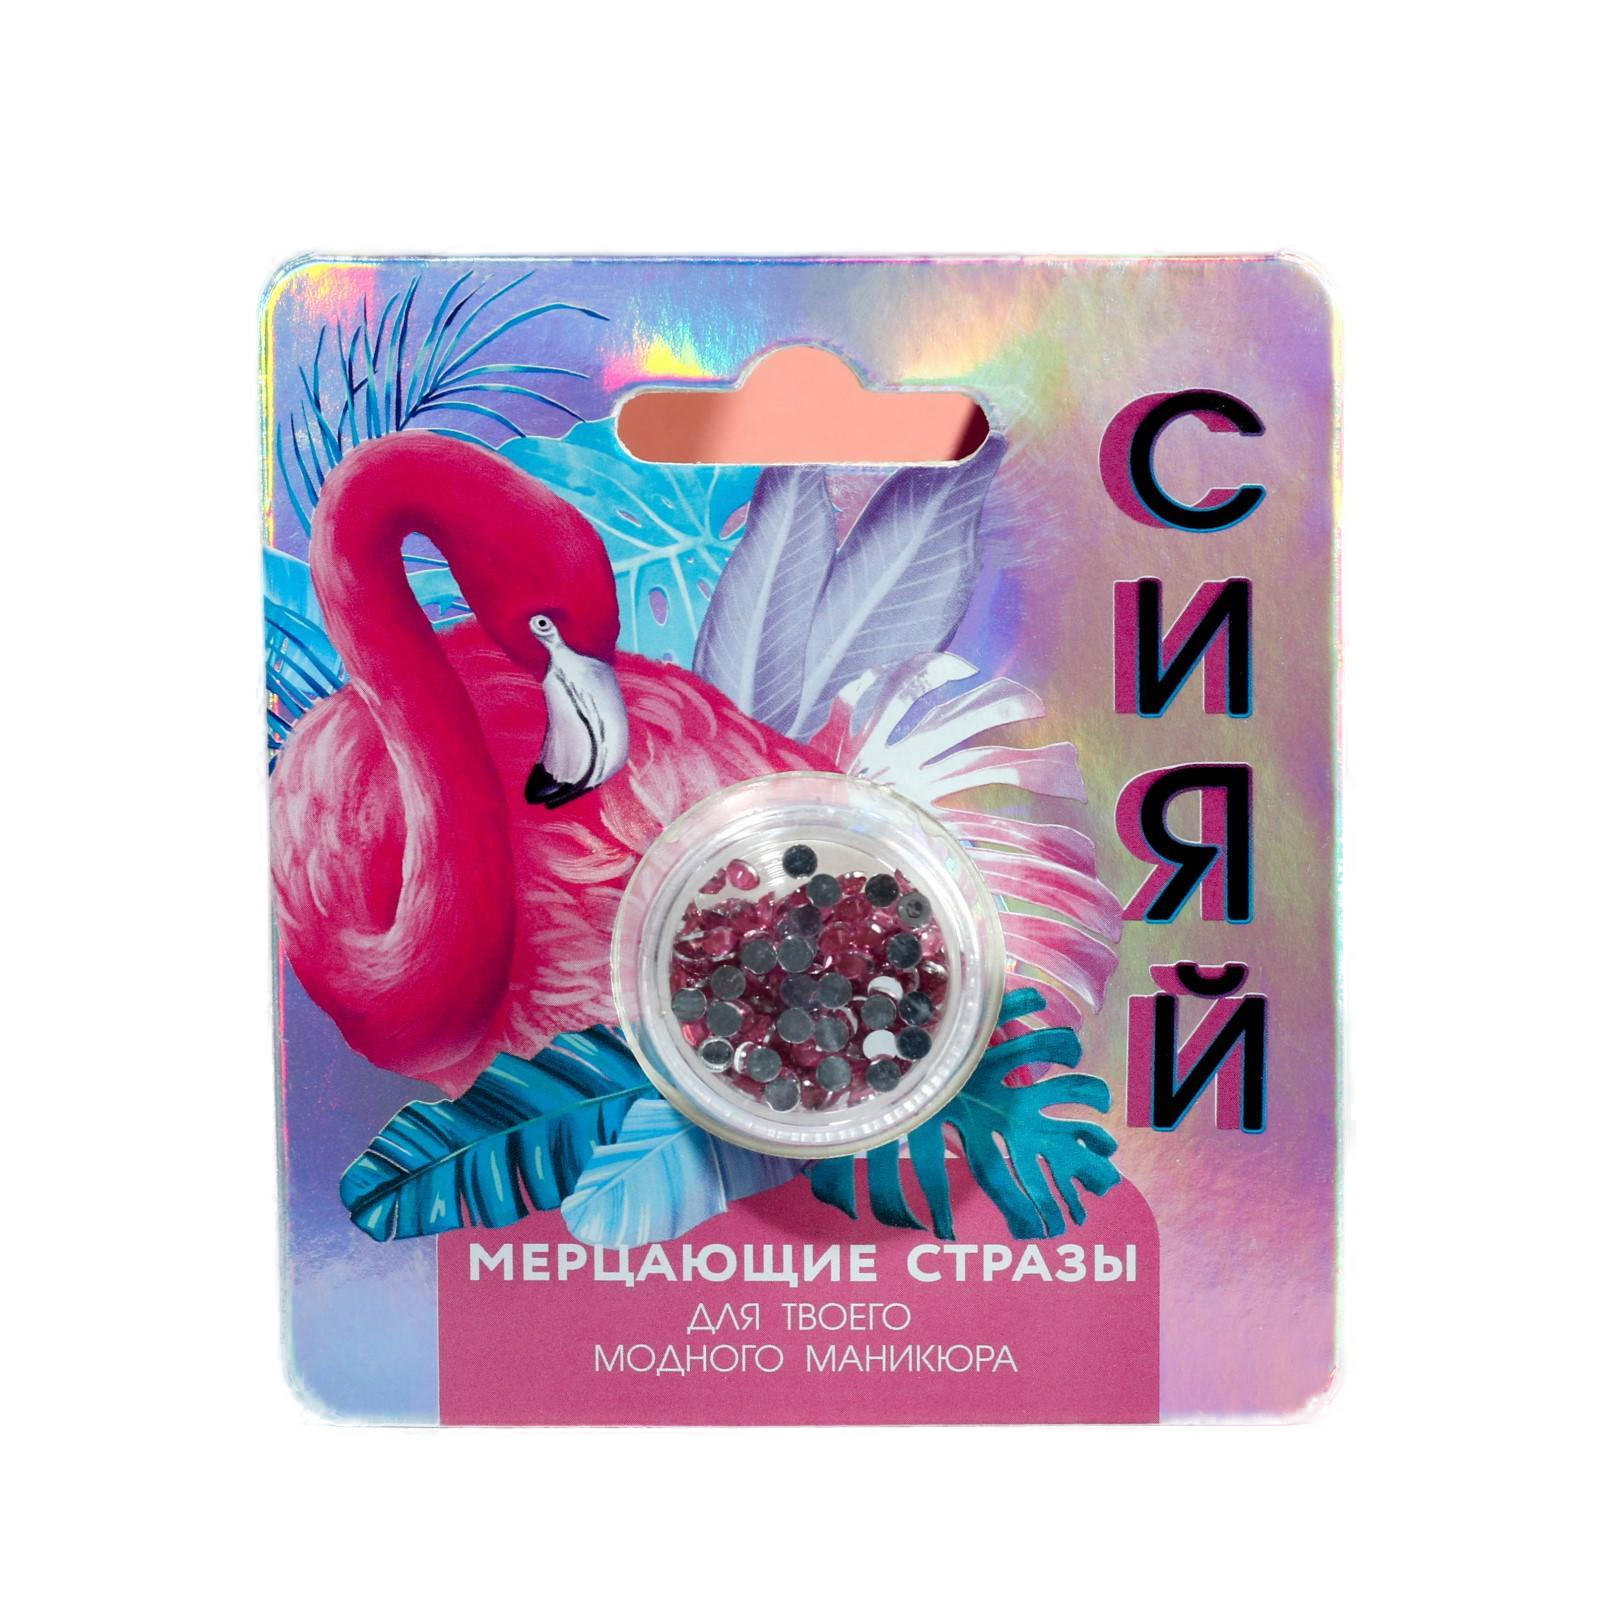 Стразы для декора ногтей Flamingo party, цвет светло-розовый 5146759 стразы самоклеящиеся звездочки розовый микс